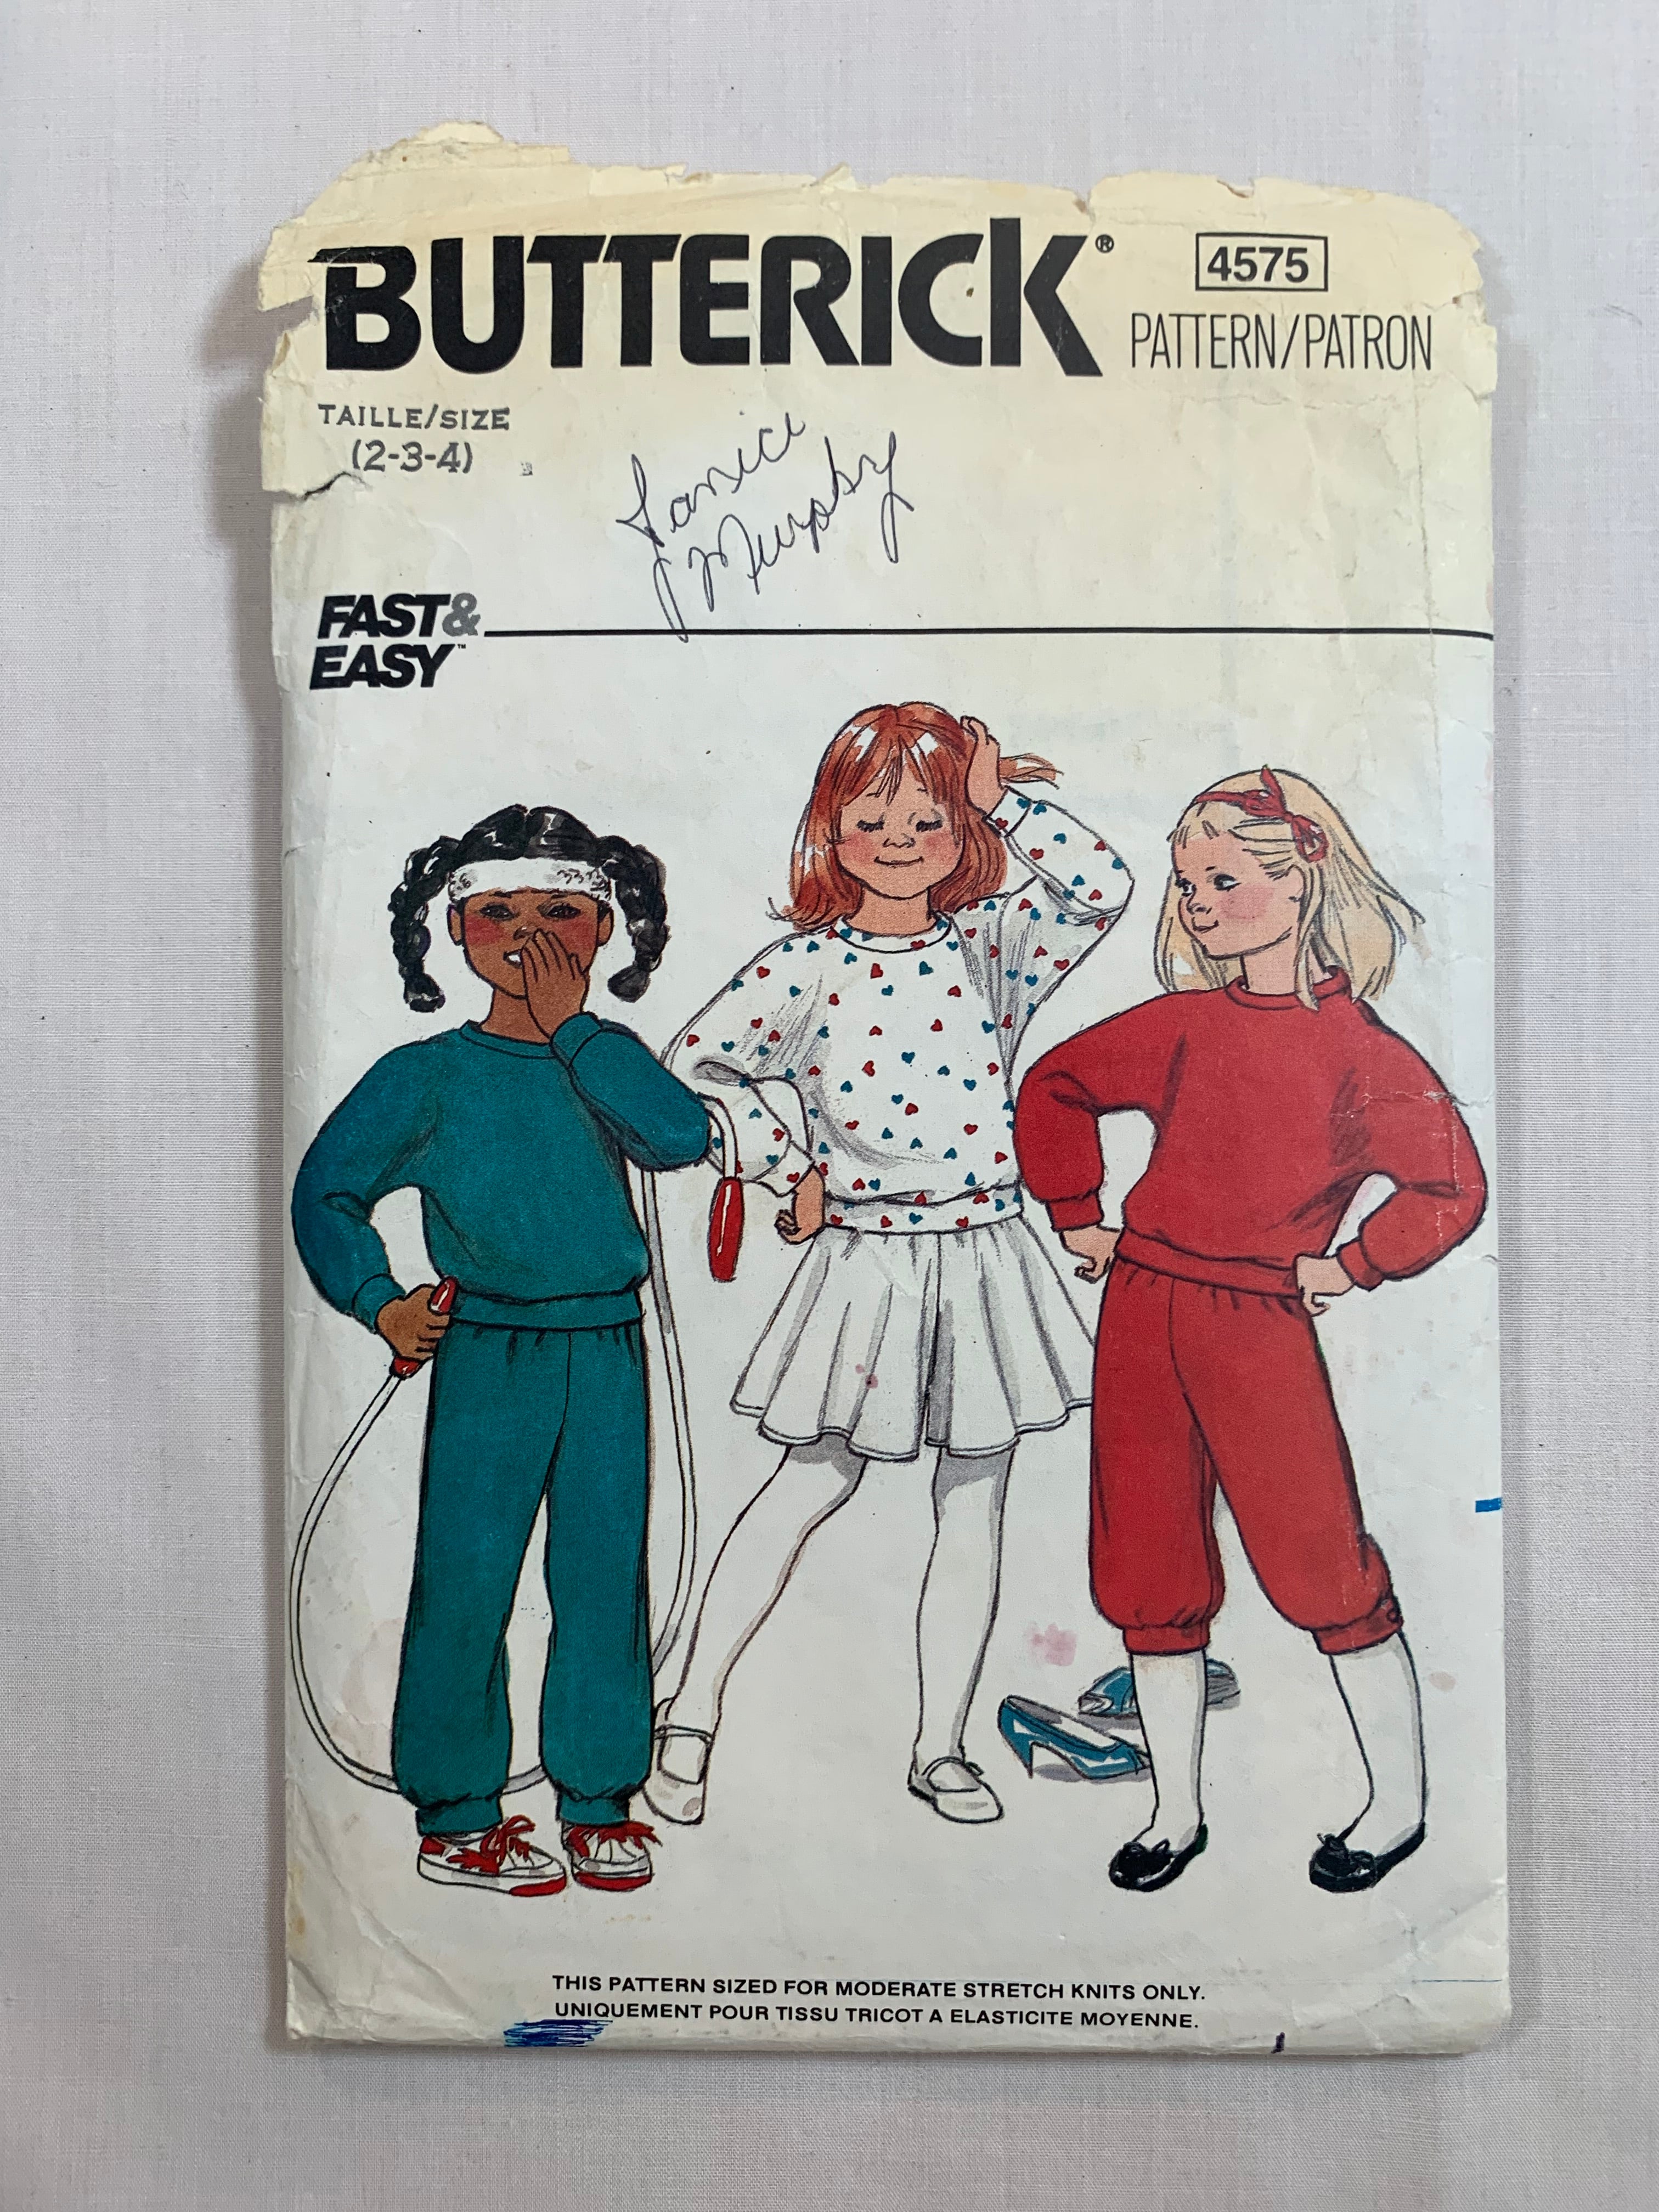 Butterick Sewing Pattern 5447 Girls' Shirt, Top, Skirt, Pants